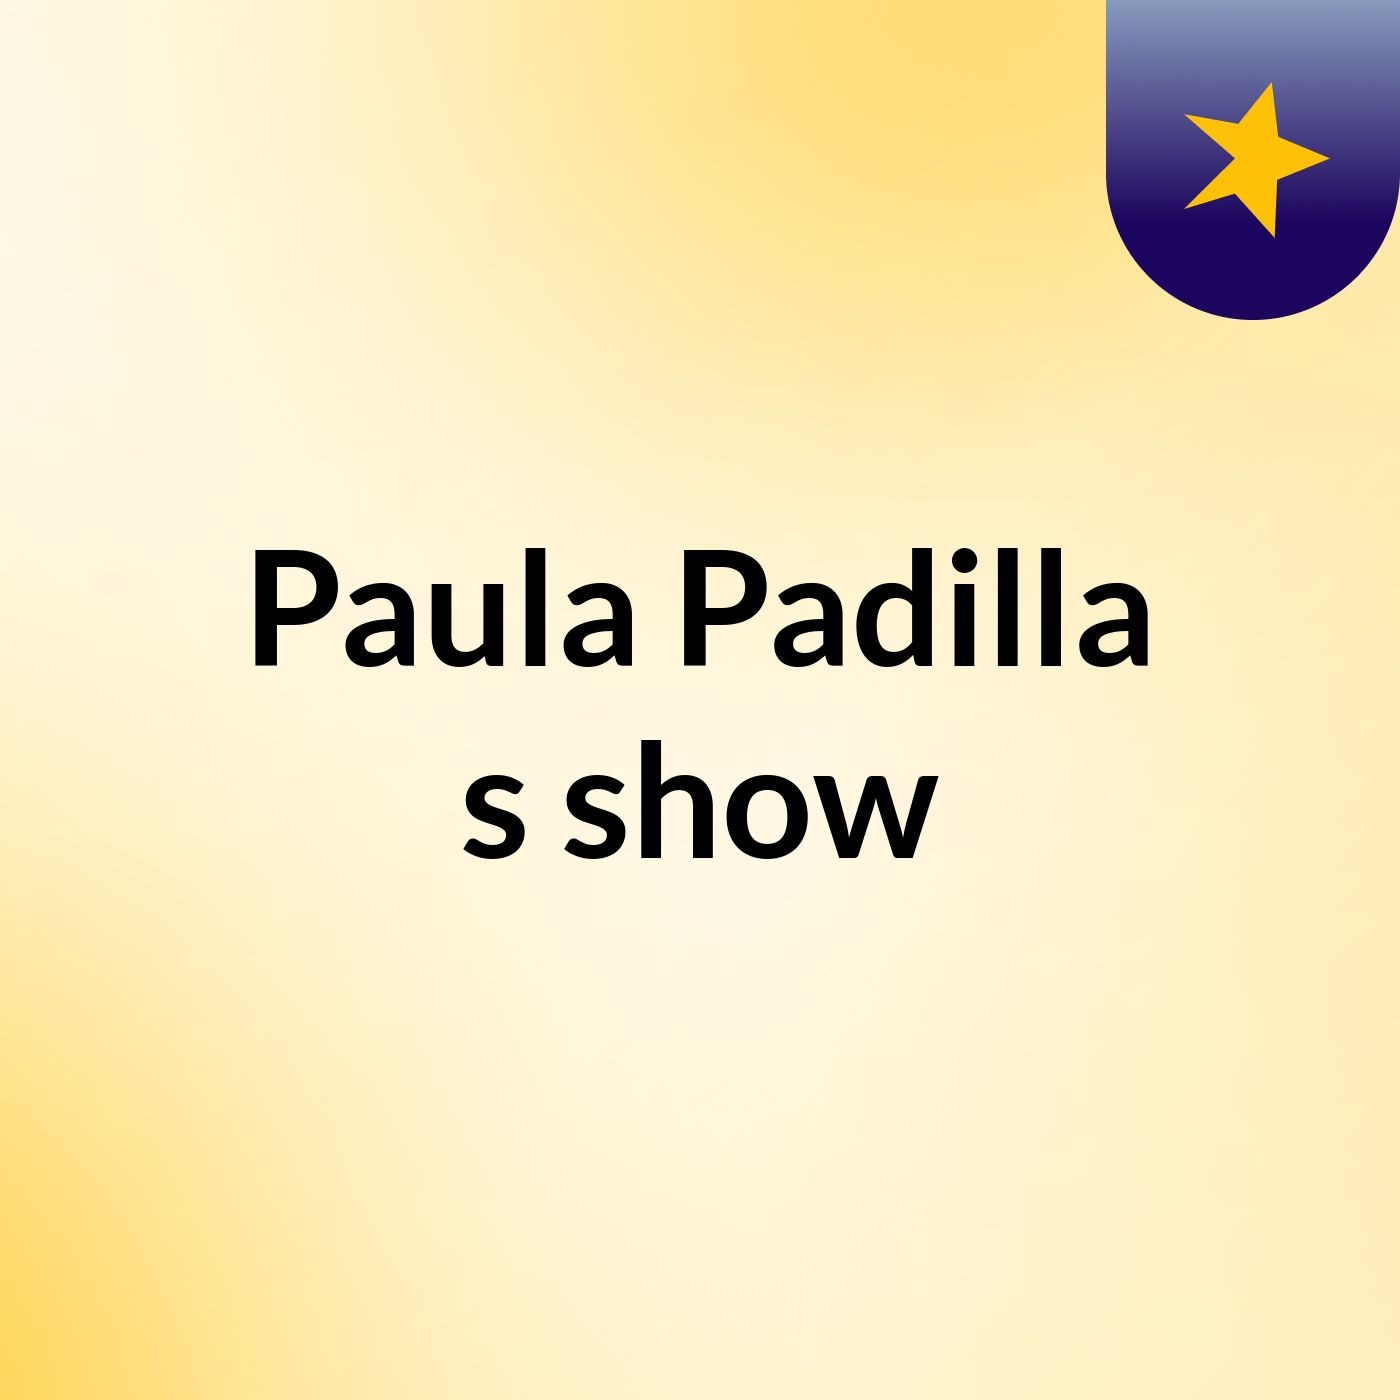 Paula Padilla's show